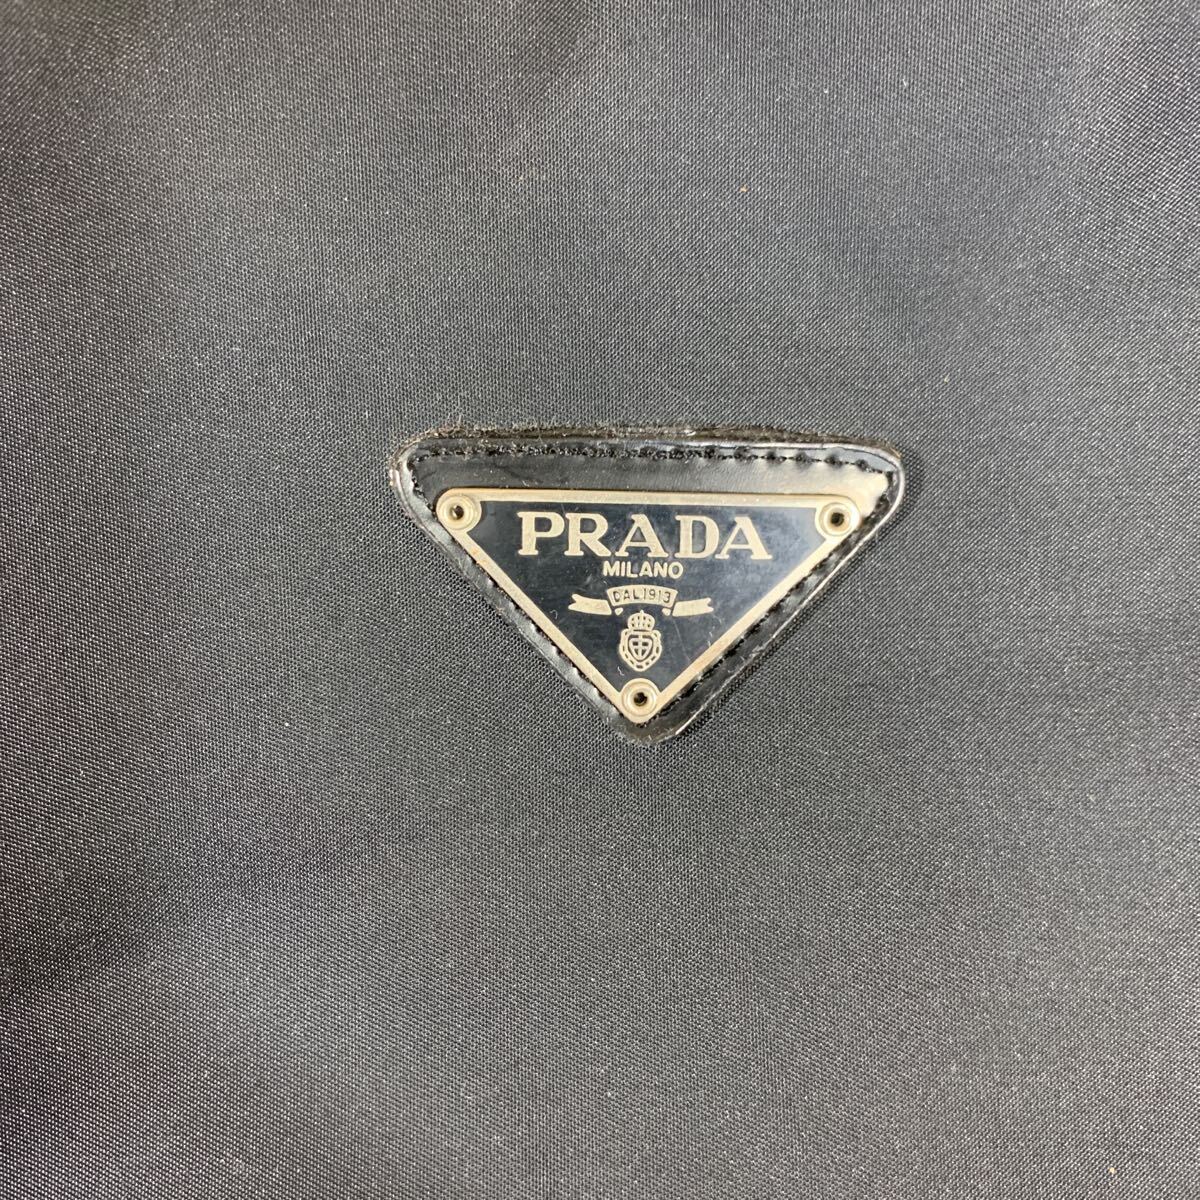 PRADA プラダ トートバッグ ナイロン ブラック 黒 バッグ 三角ロゴ 本体28㎝×34㎝×マチ幅10㎝(その2 / 5_画像4